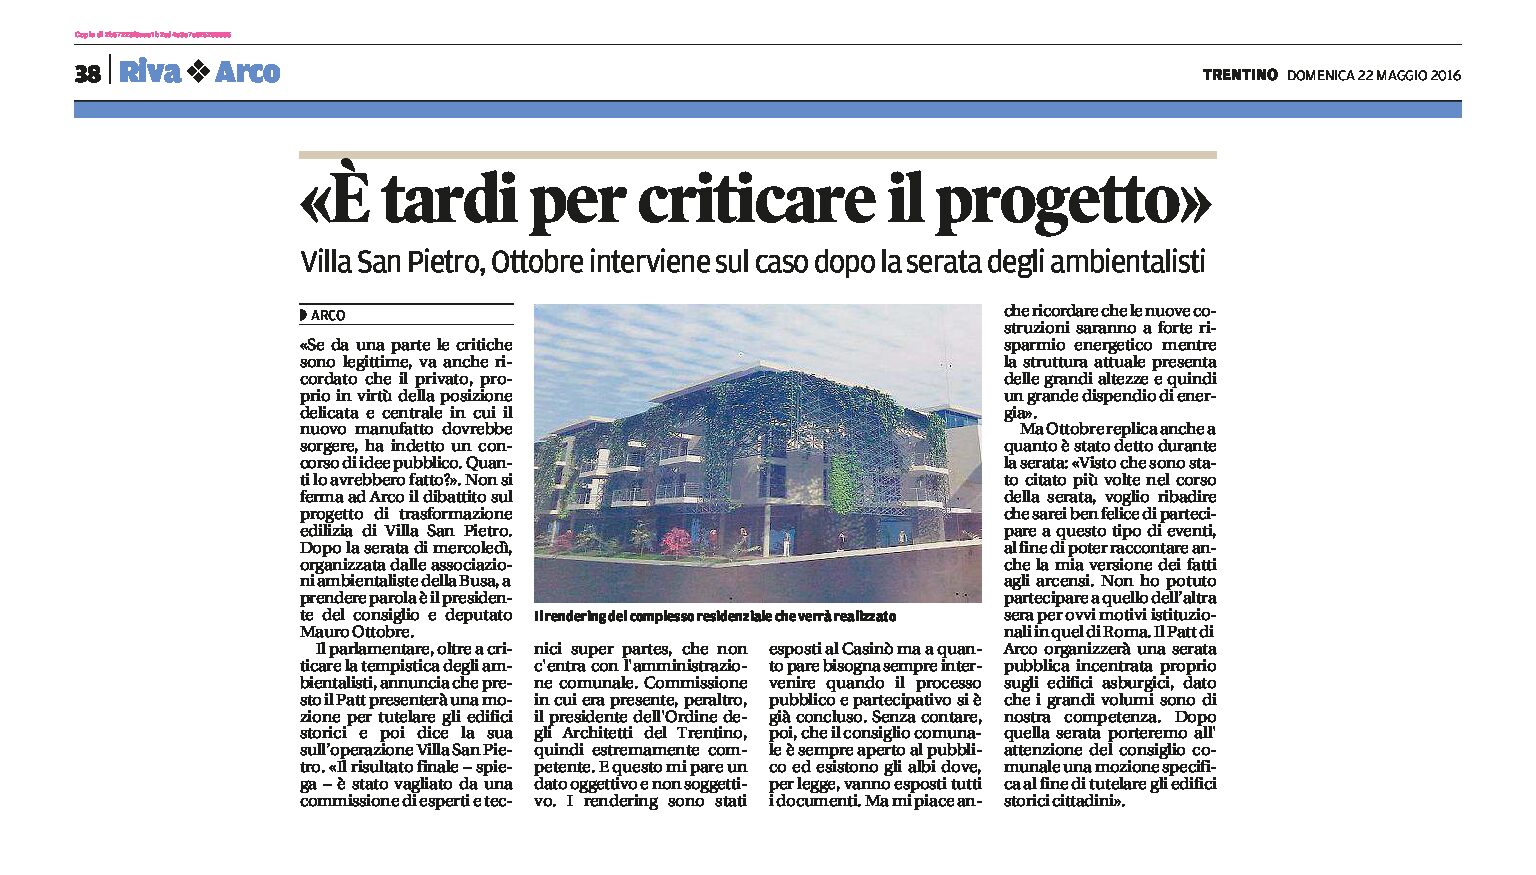 Arco, Villa San Pietro: Ottobre “è tardi per criticare il progetto”